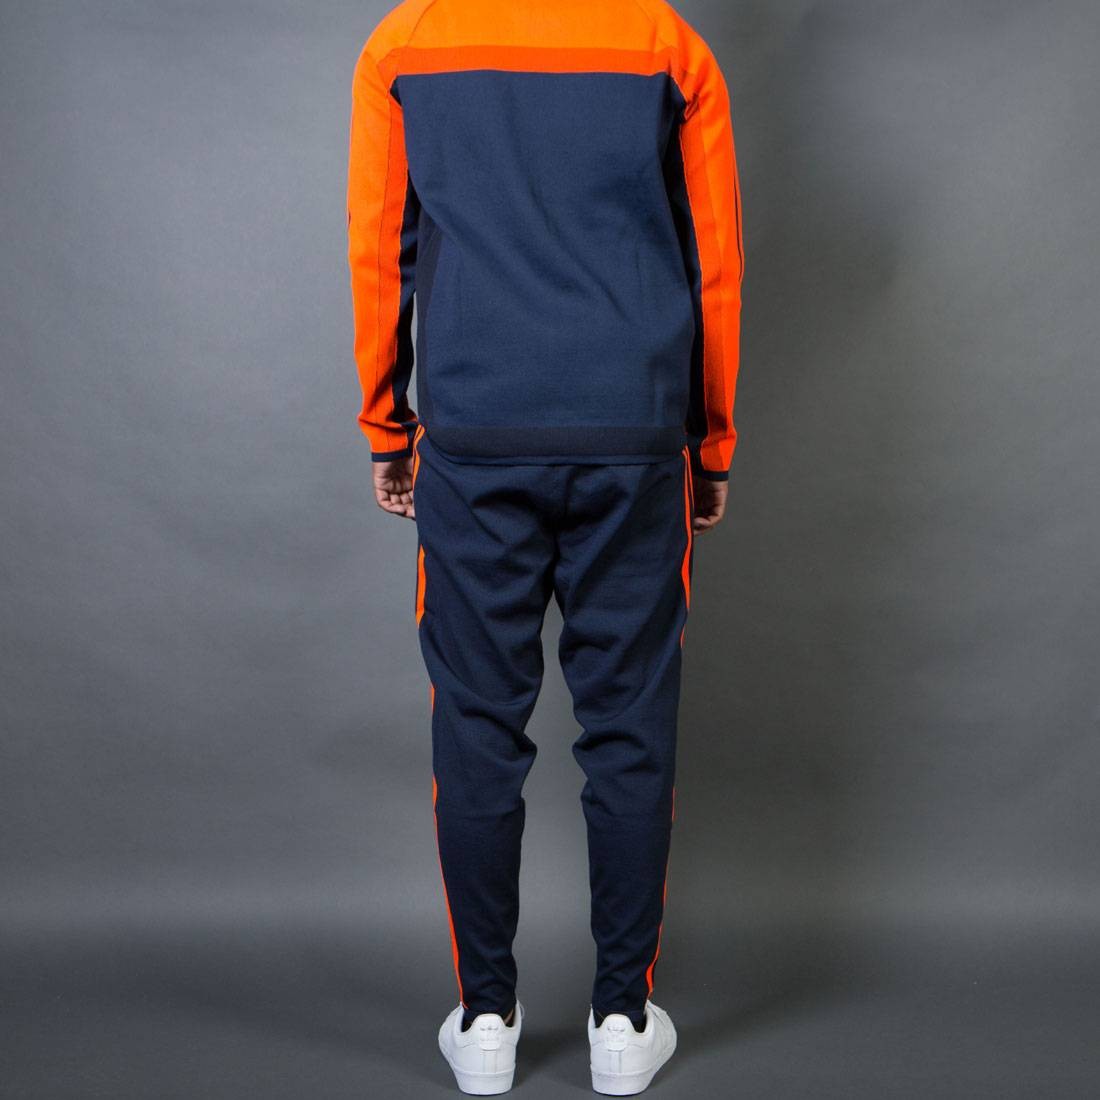 orange and blue adidas tracksuit